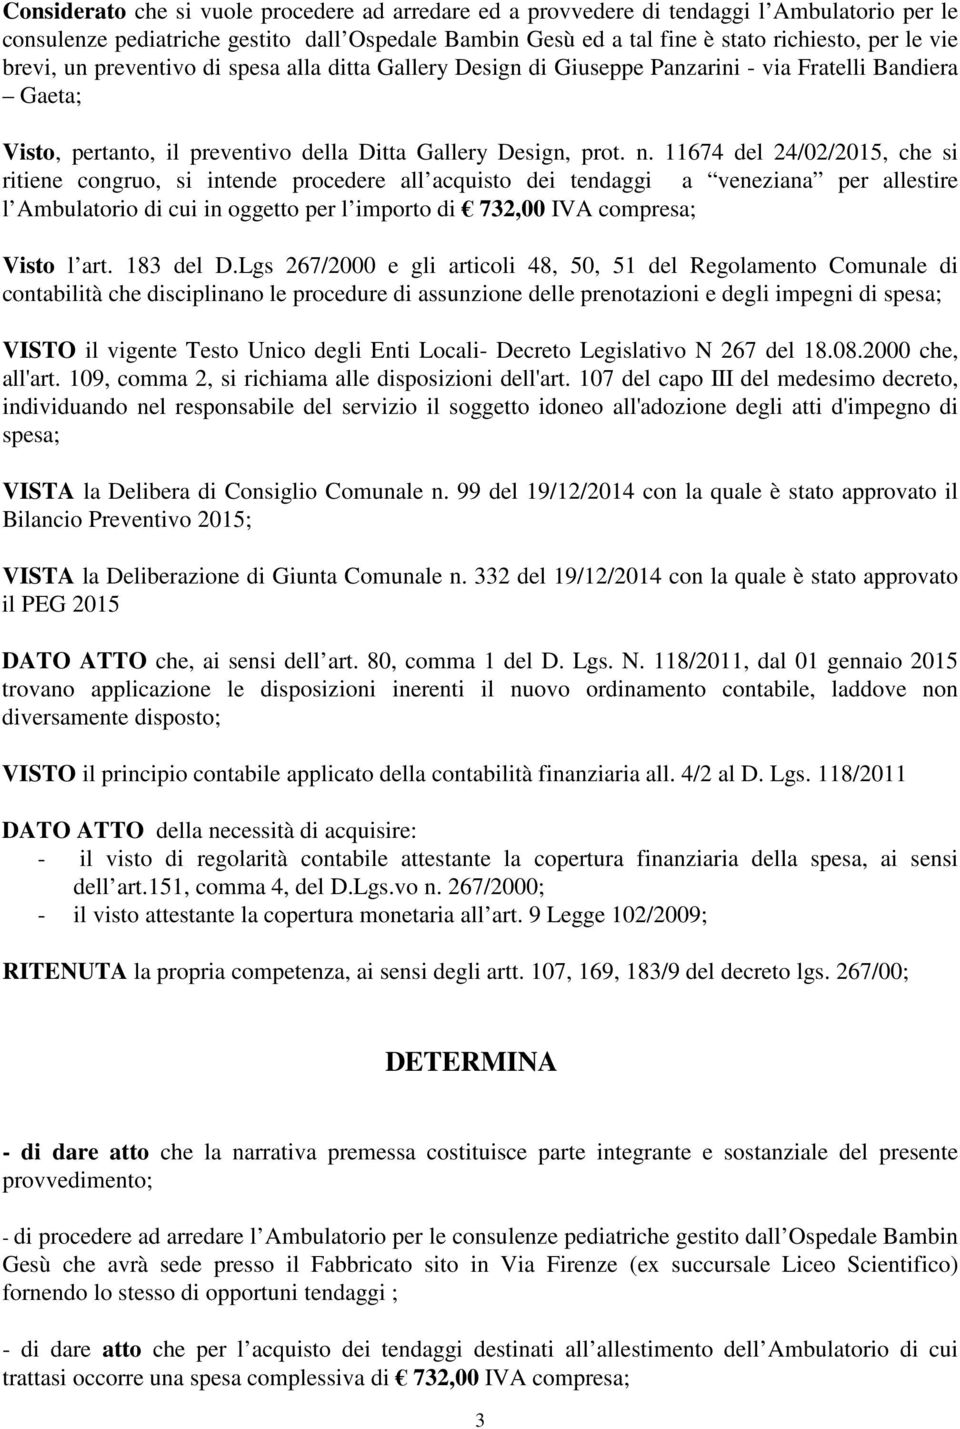 11674 del 24/02/2015, che si ritiene congruo, si intende procedere all acquisto dei tendaggi a veneziana per allestire l Ambulatorio di cui in oggetto per l importo di 732,00 IVA compresa; Visto l